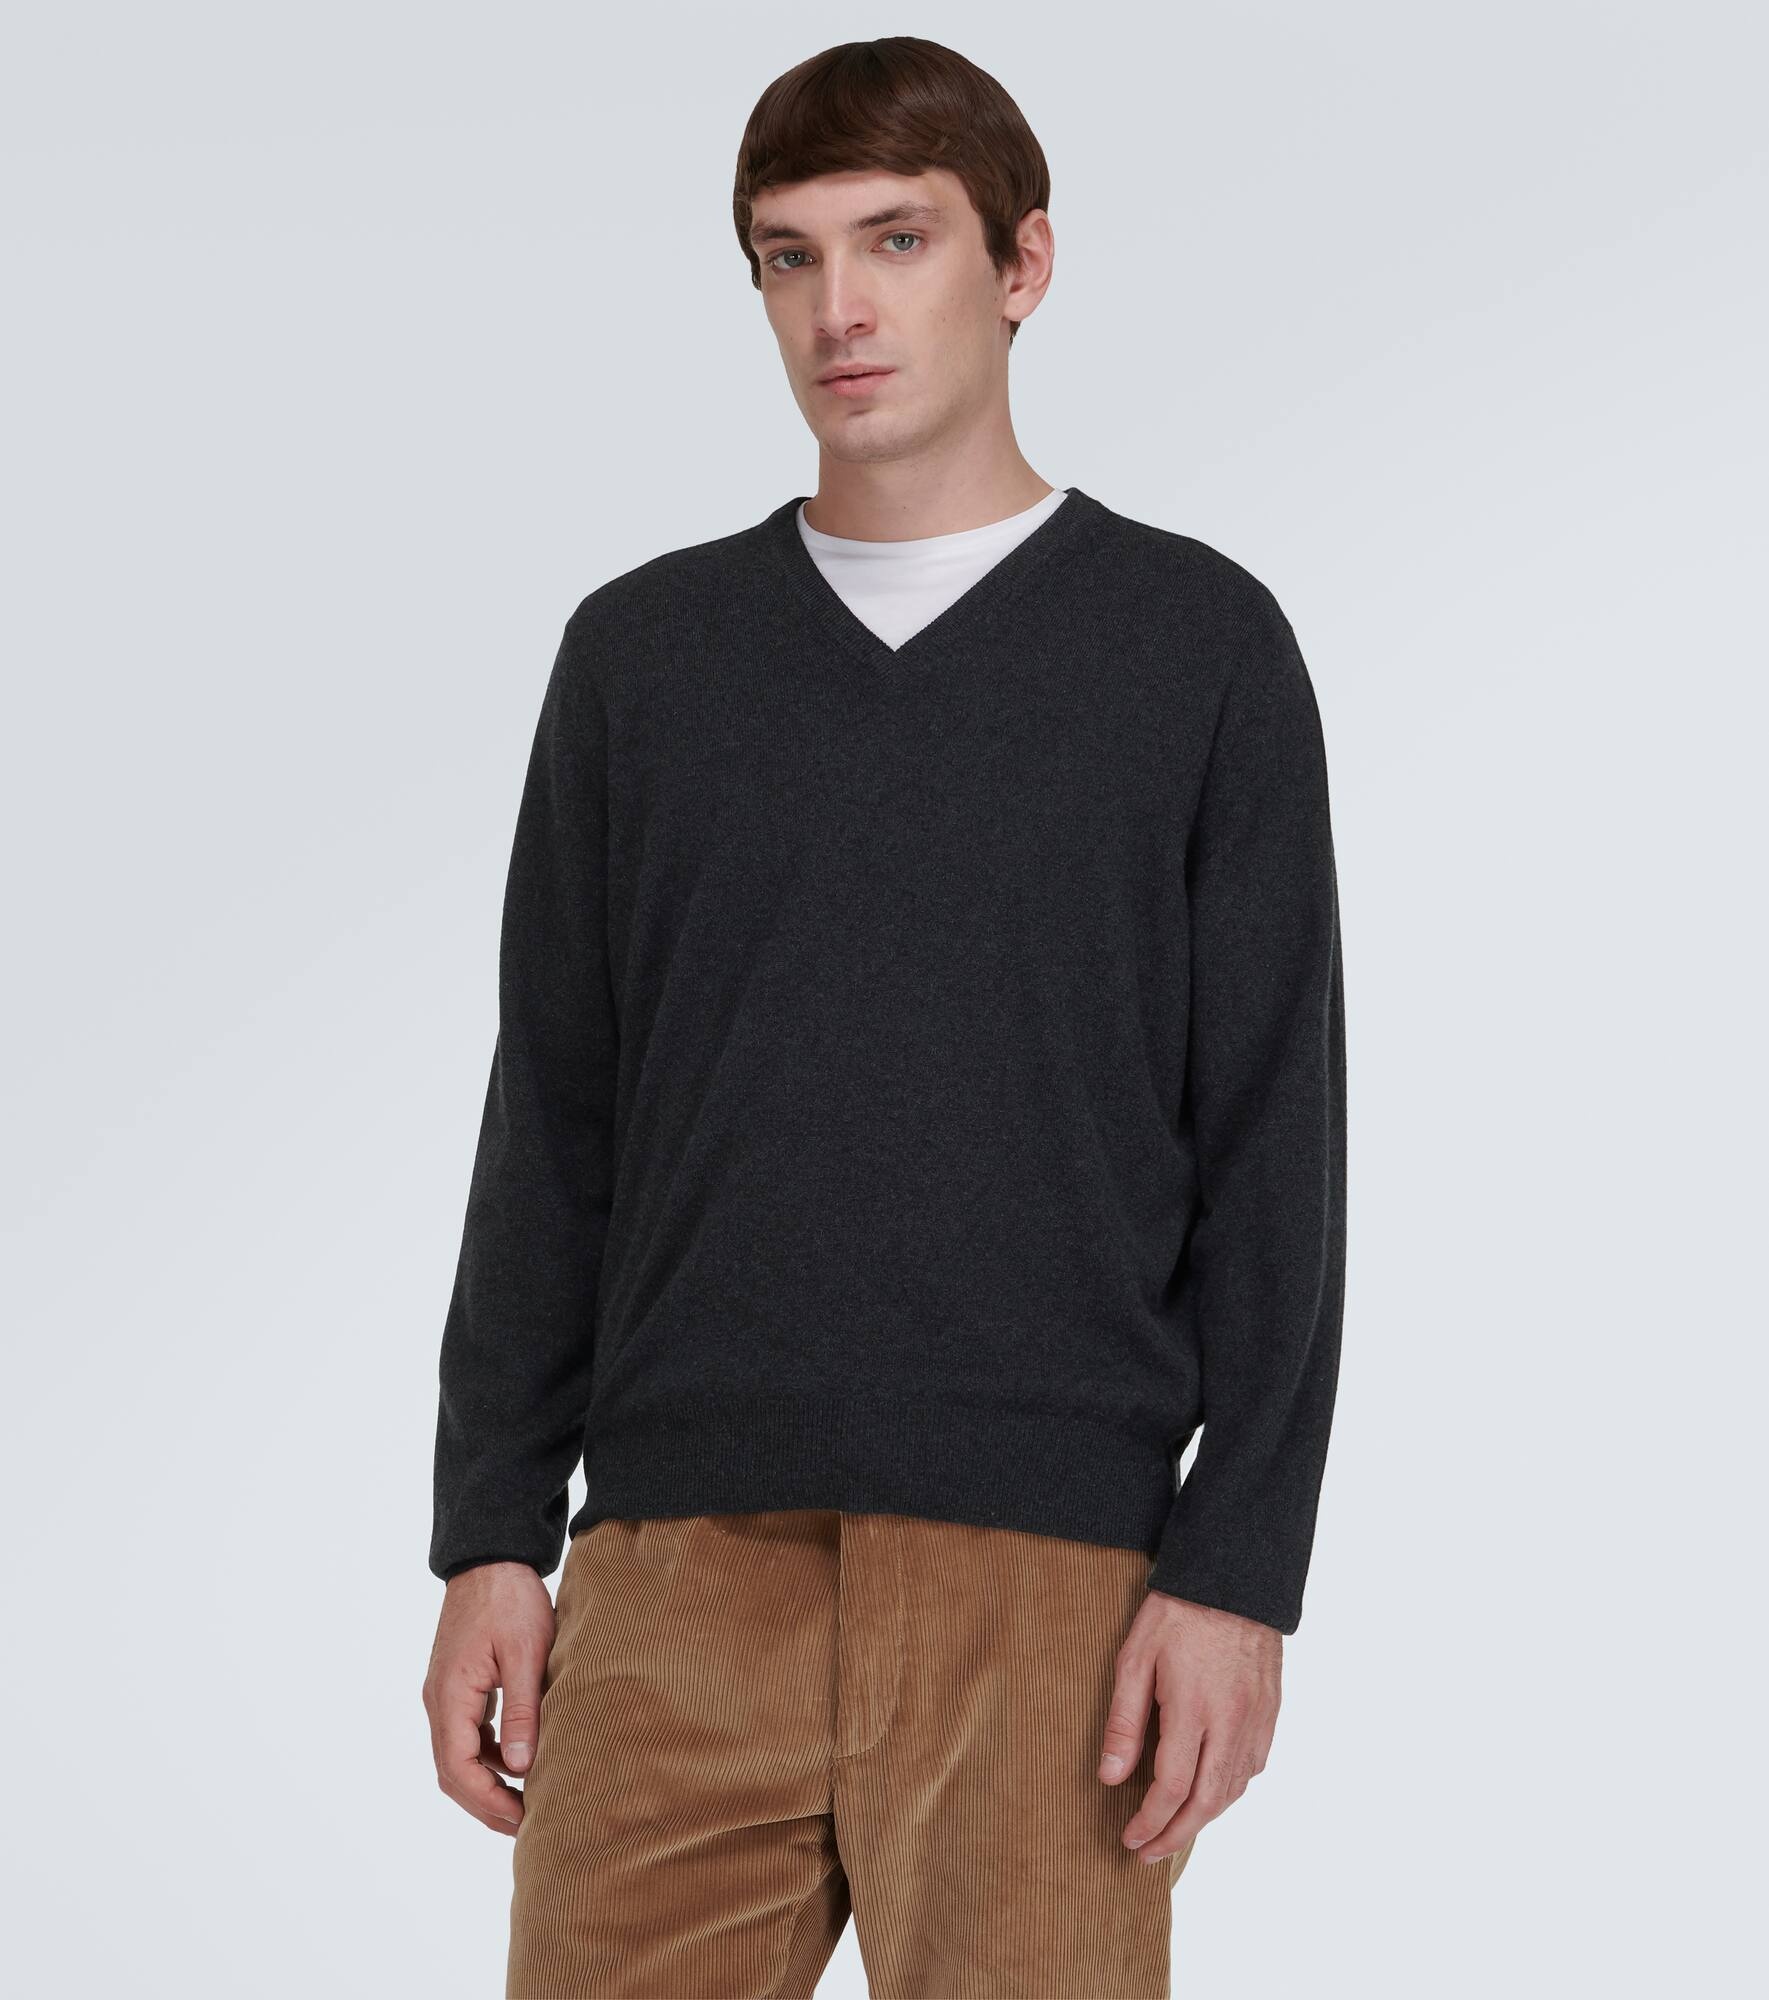 Scollo cashmere sweater - 3